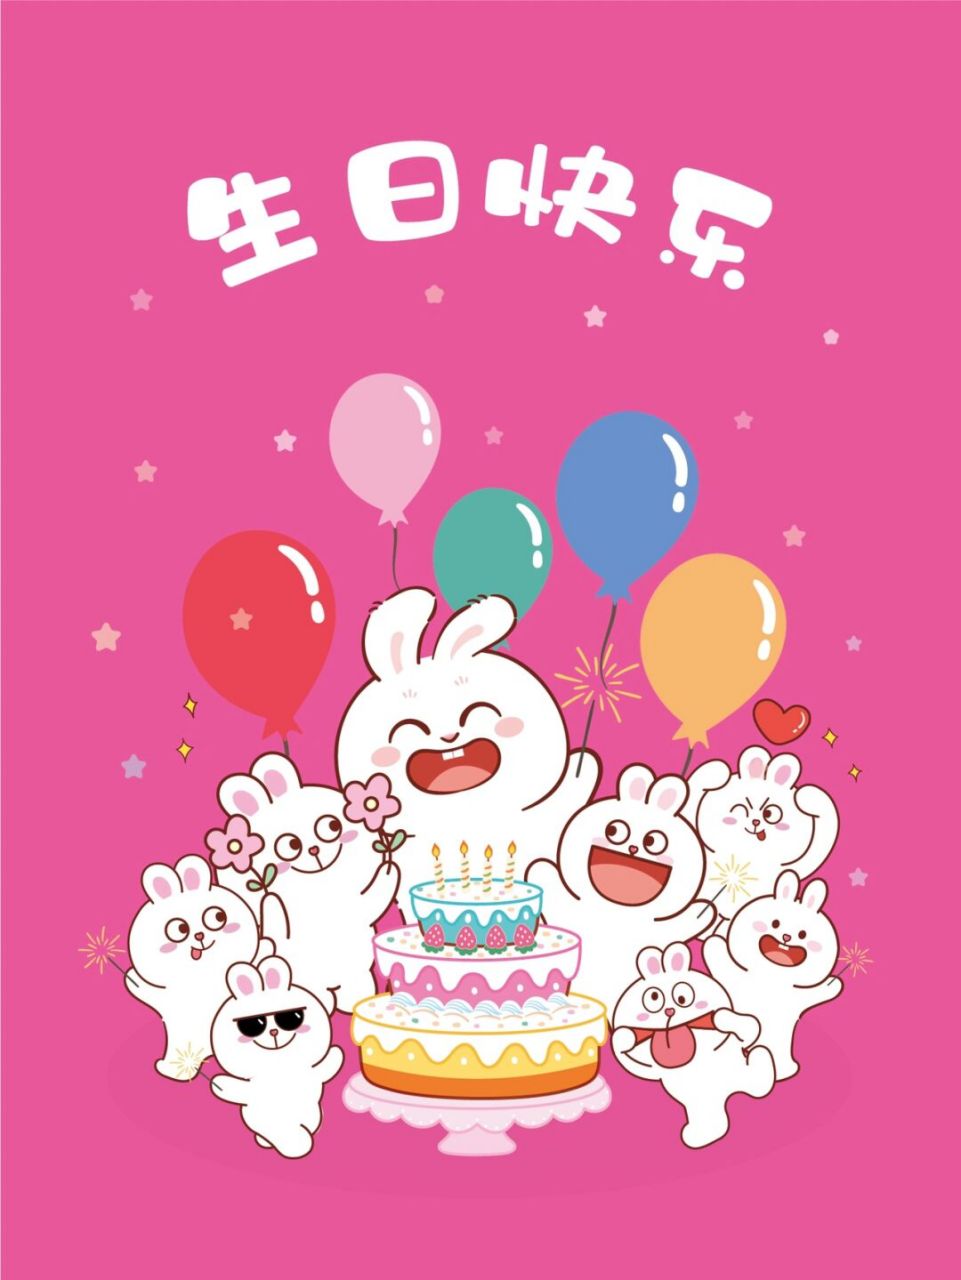 兔子萌生日快乐卡通可爱 表情包可搜索兔子萌获取 谢谢喜欢 商用需要